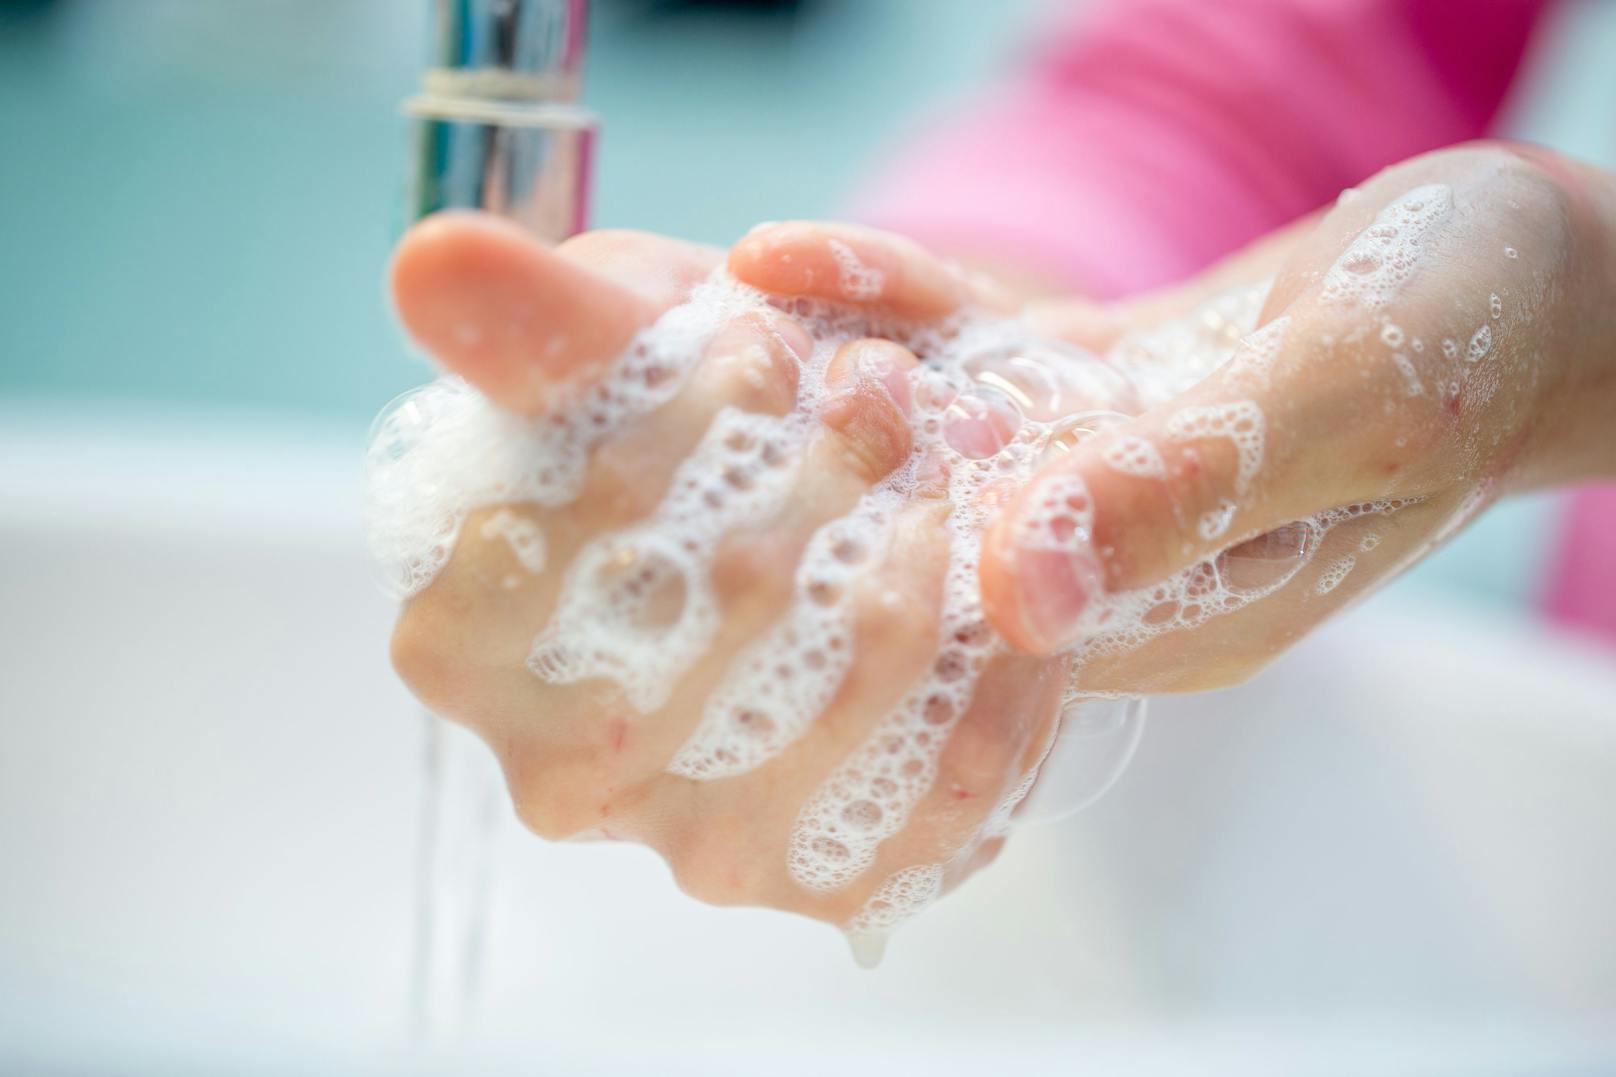 Die Amerikaner sind beim Waschen der Hände auf das Niveau von vor der Pandemie zurückgefallen.